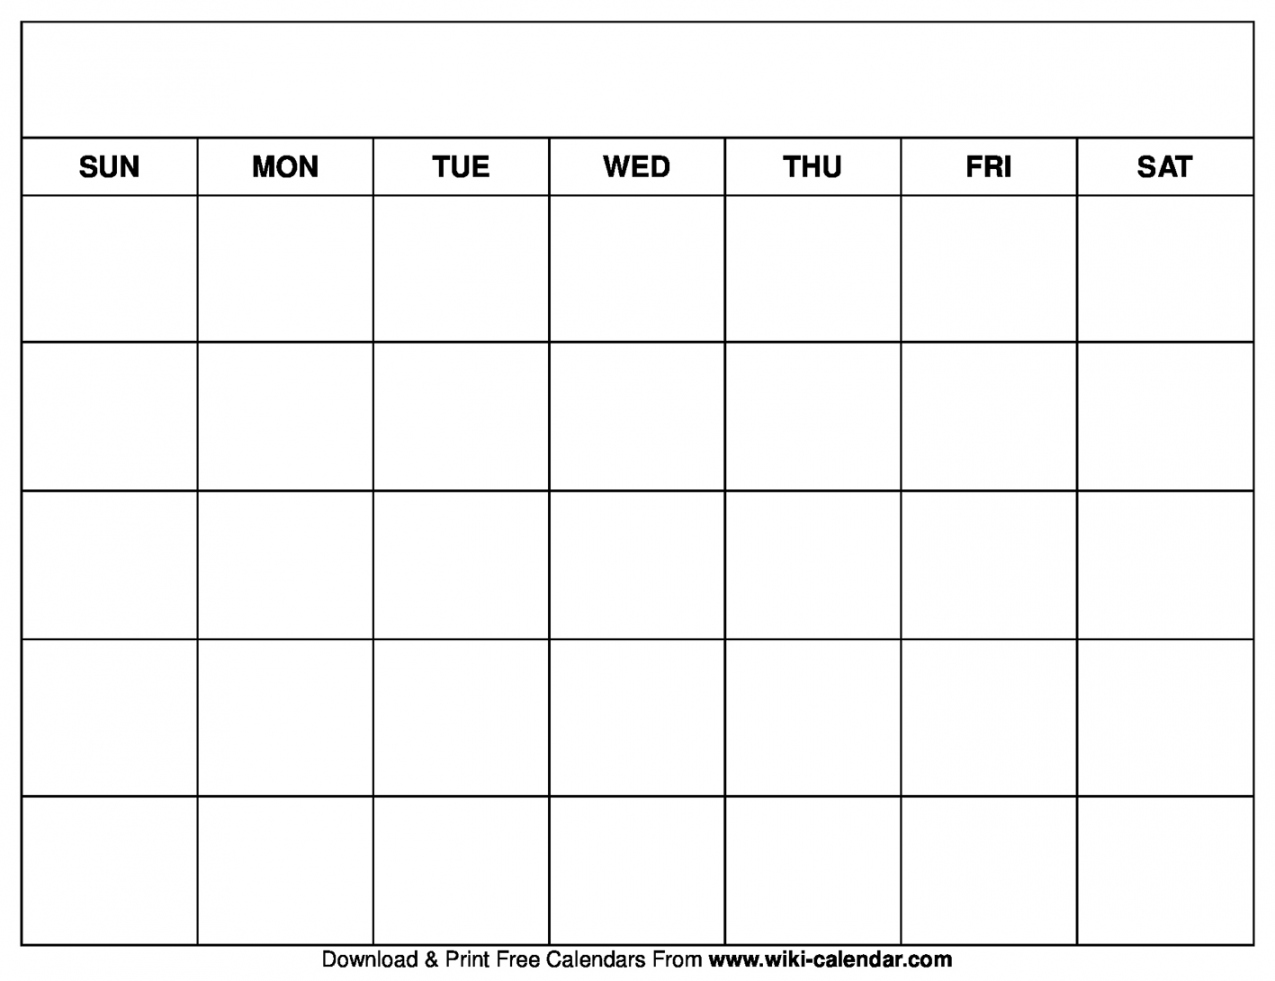 Free Calendar Template Printable - Printable - Printable Blank Calendar Templates - Wiki Calendar